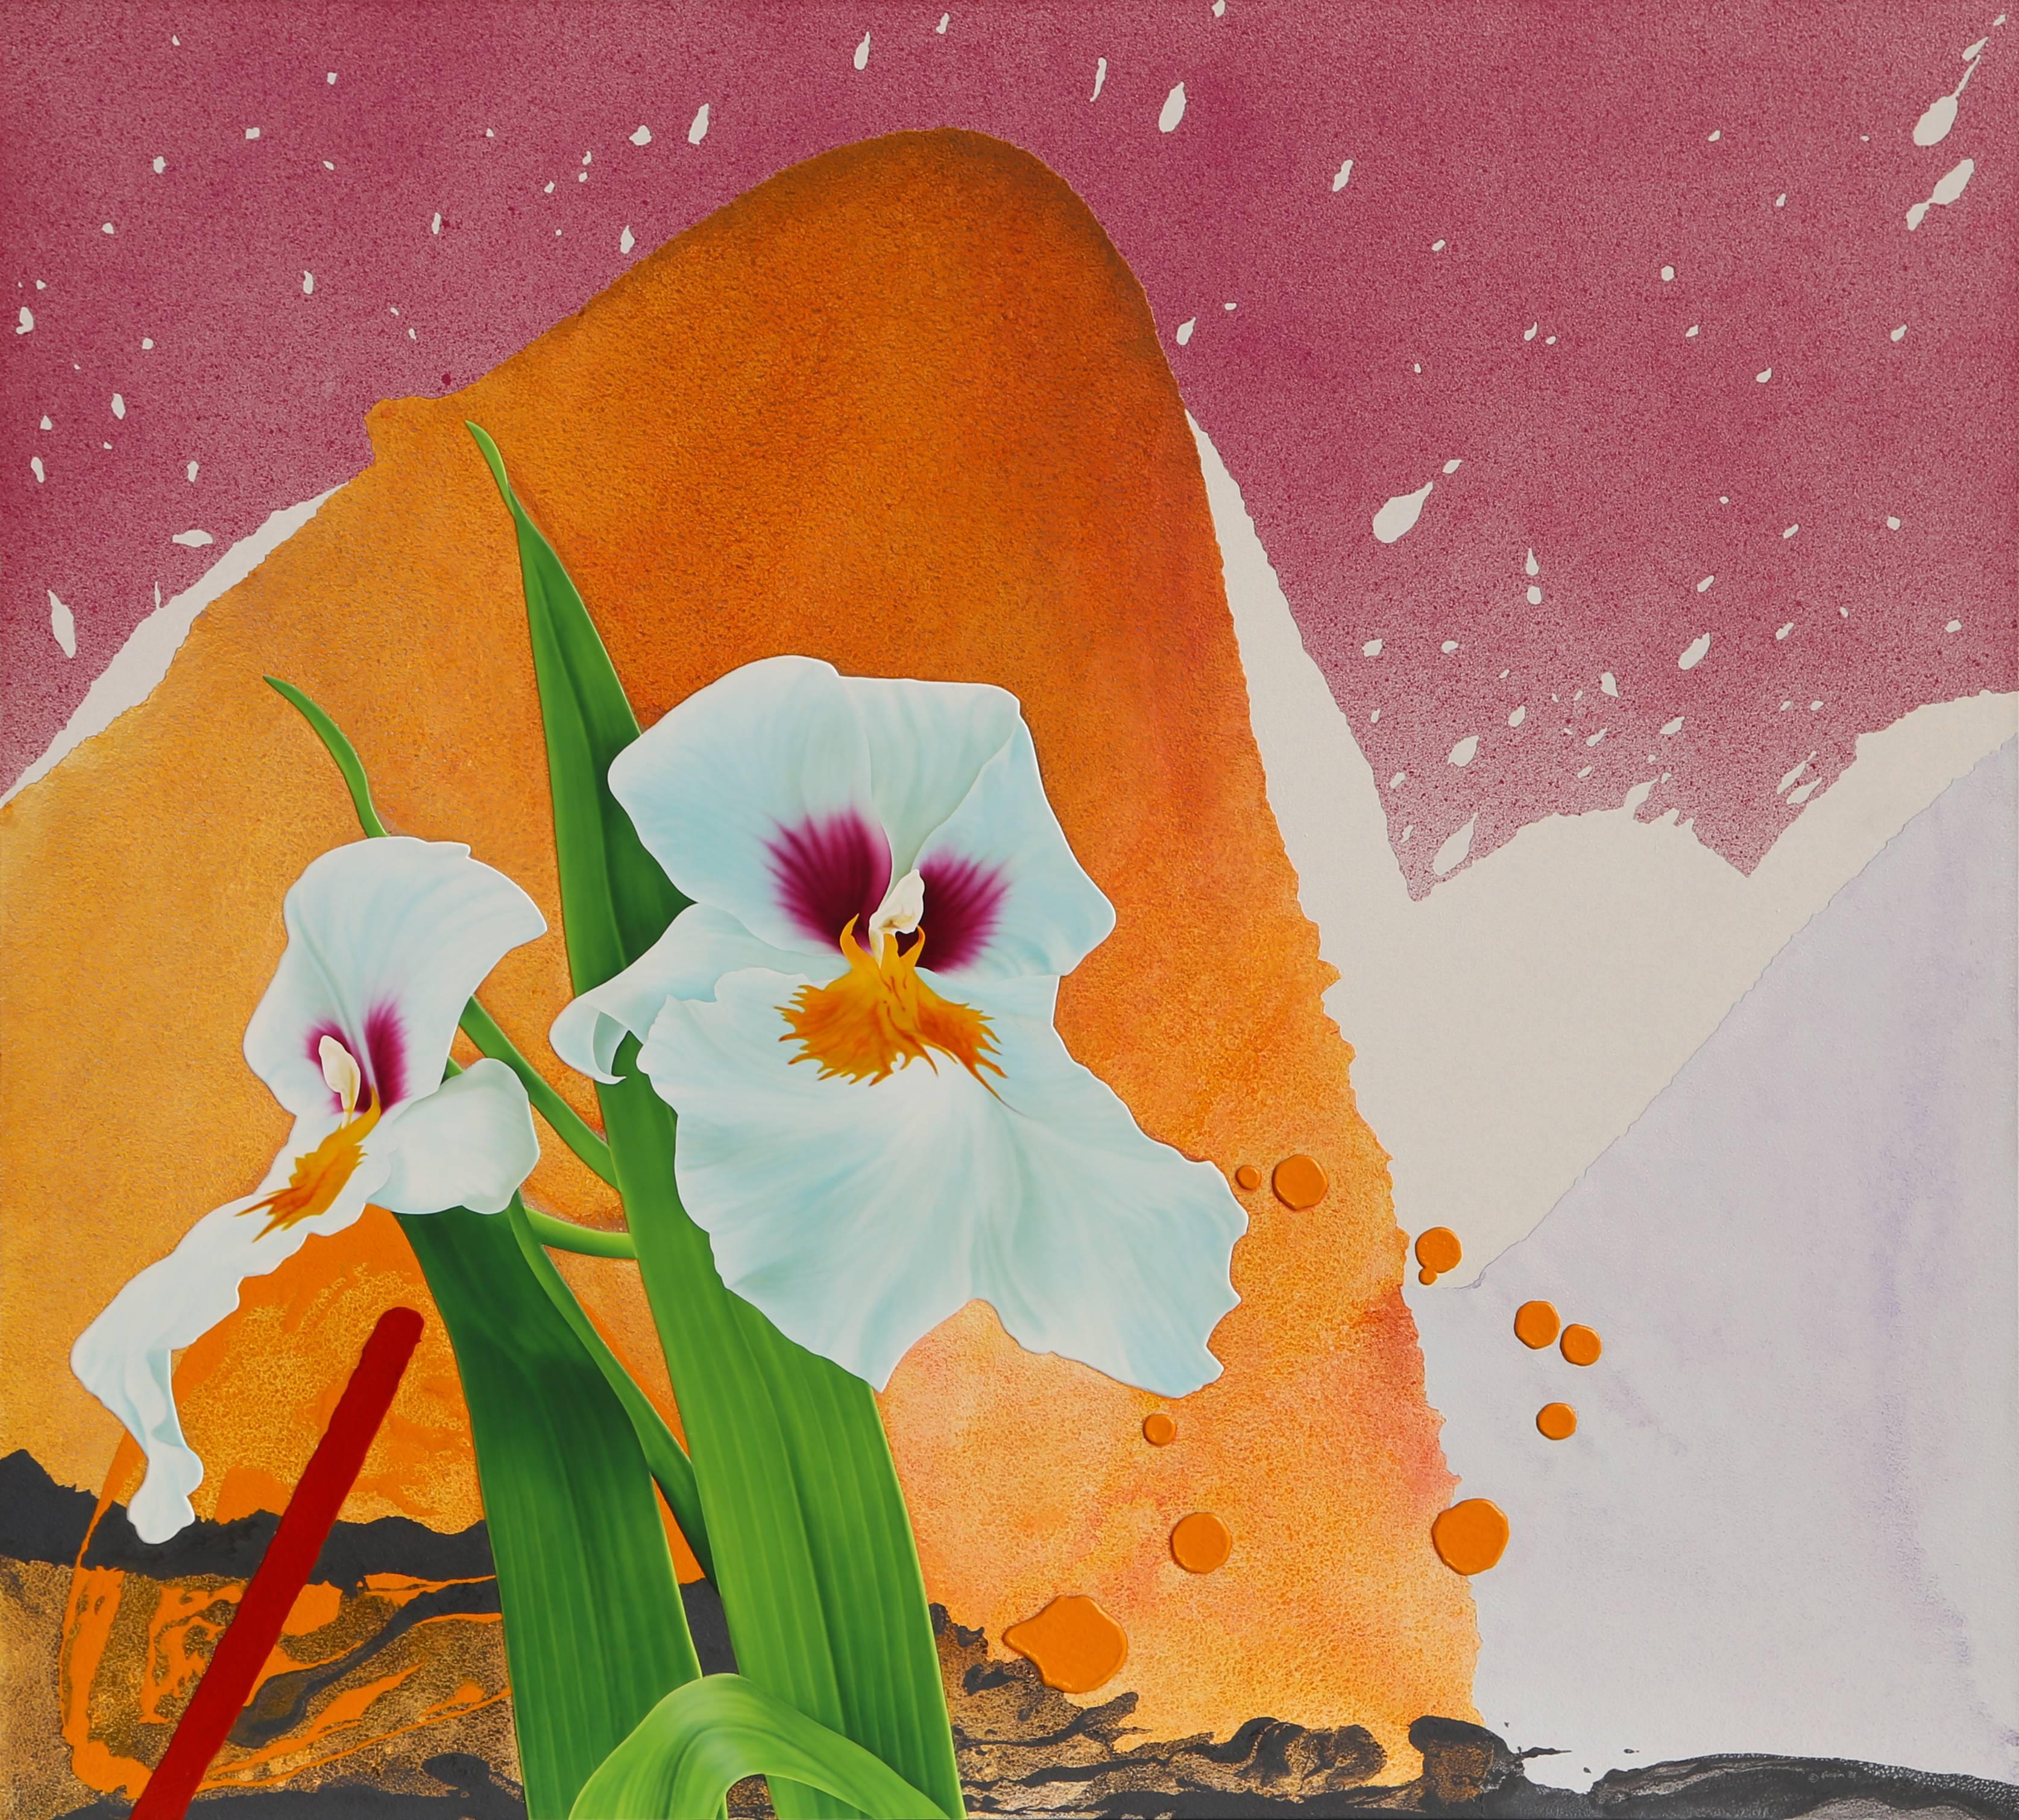 Artiste : Michael Knigin, américain (1942 - 2011)
Titre : Iris blancs
Année : vers 1989
Médium : Acrylique sur toile
Taille : 72 x 80 pouces